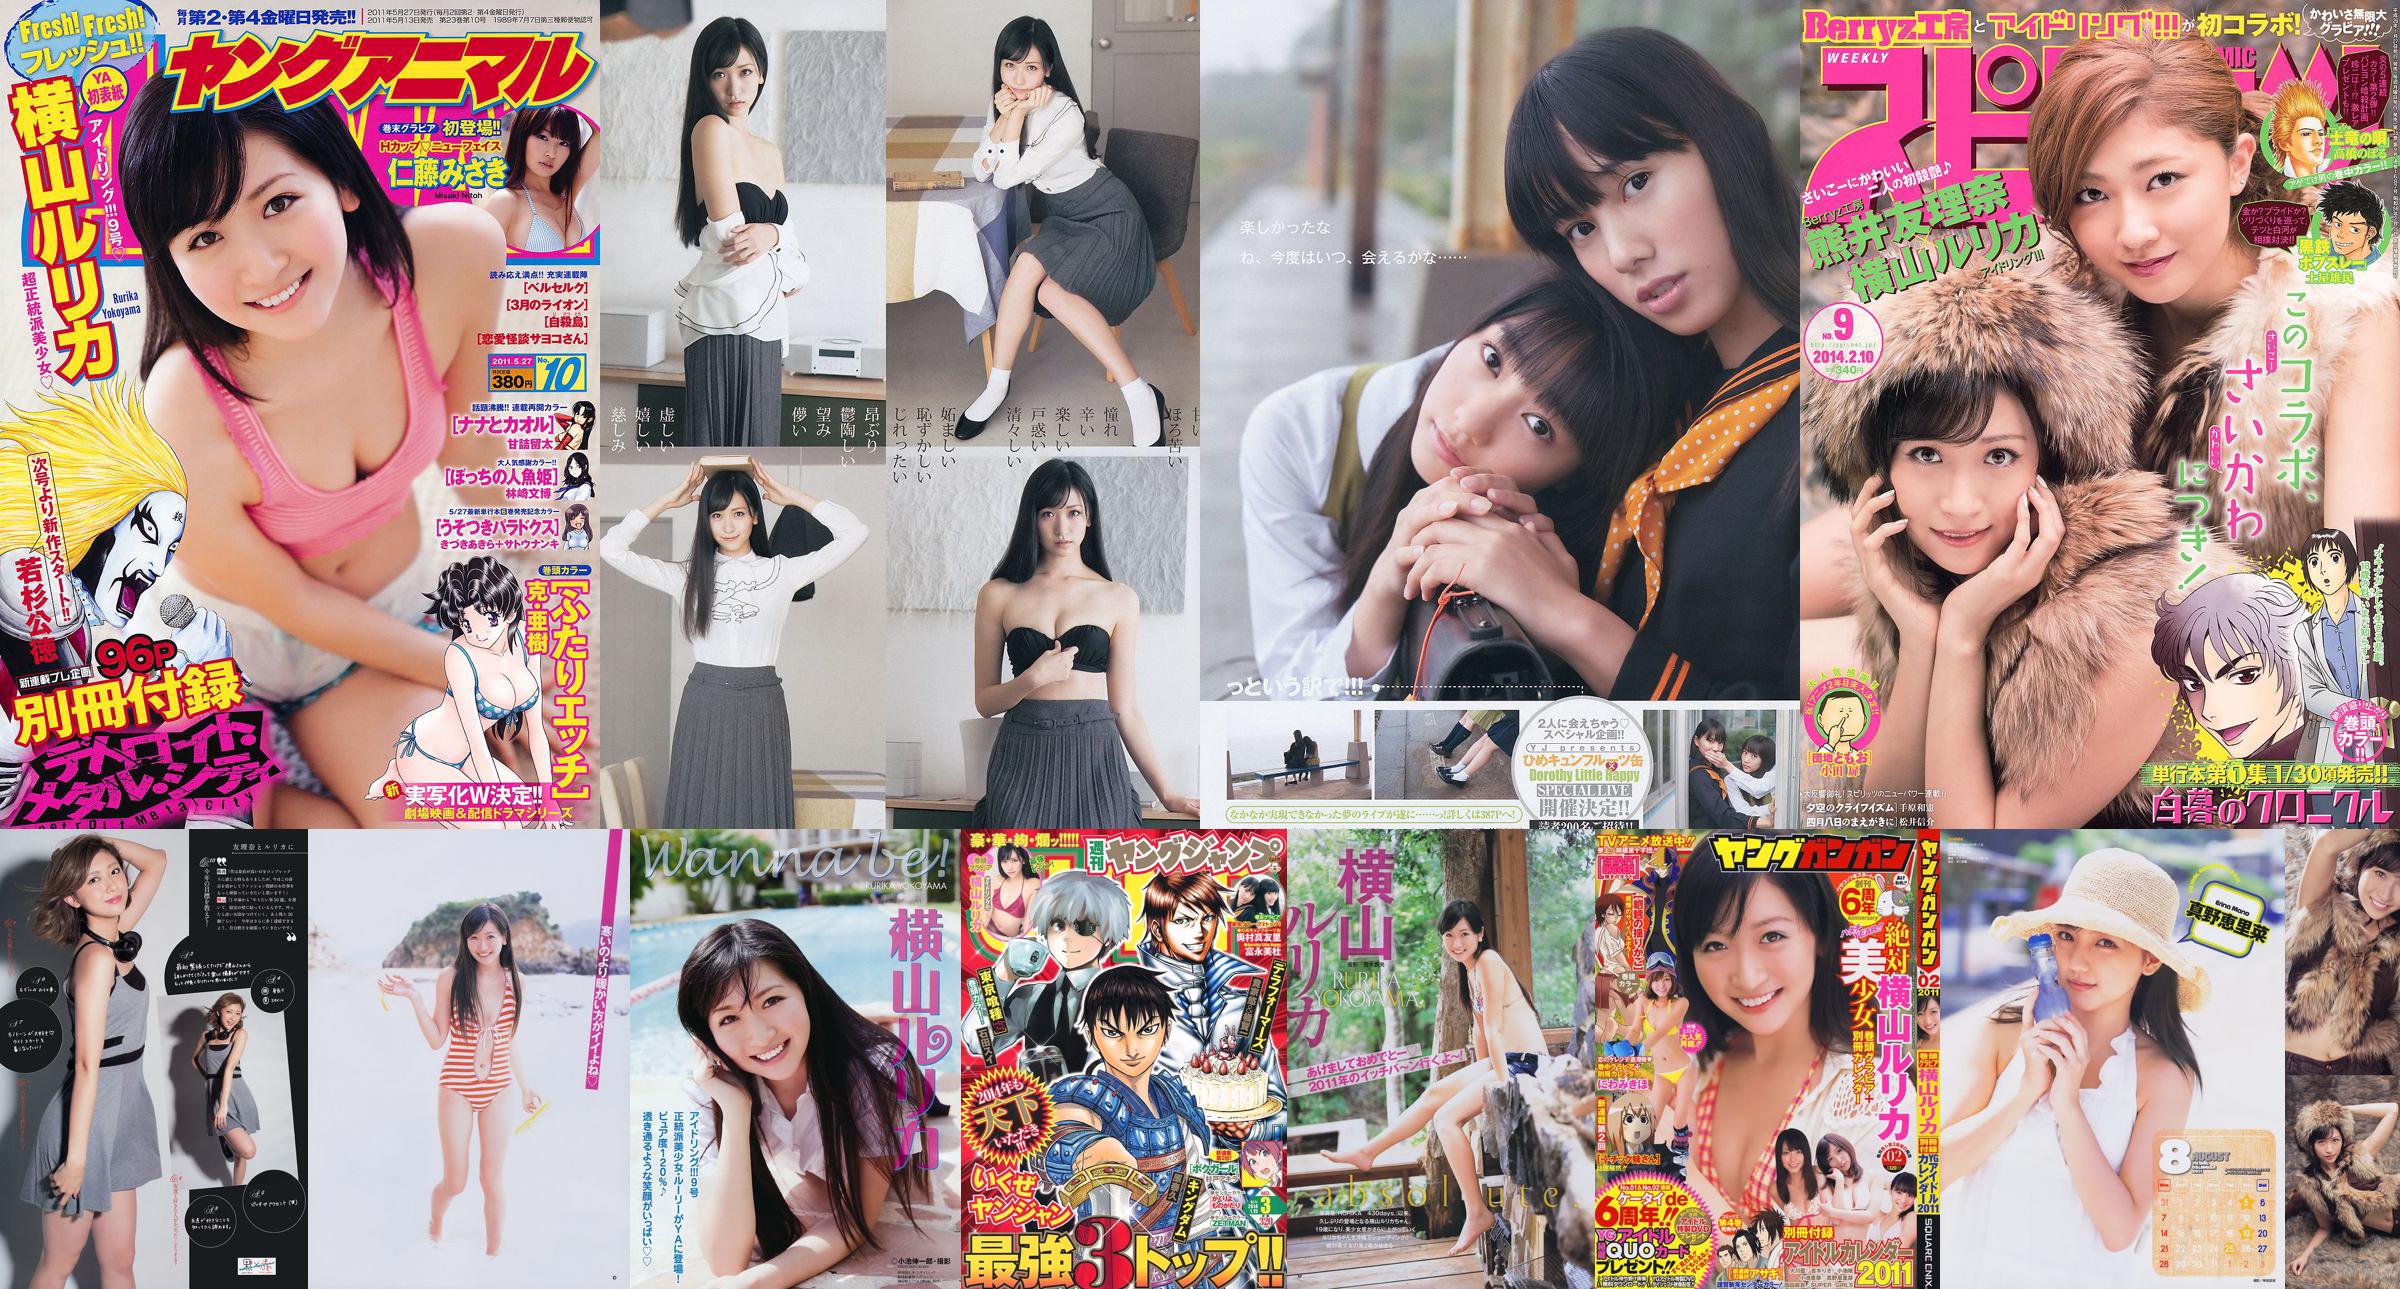 [Weekly Big Comic Spirits] Yokoyama Rurika Kumai Yurina 2014 No.09 Photo Magazine No.31e2ac Page 1